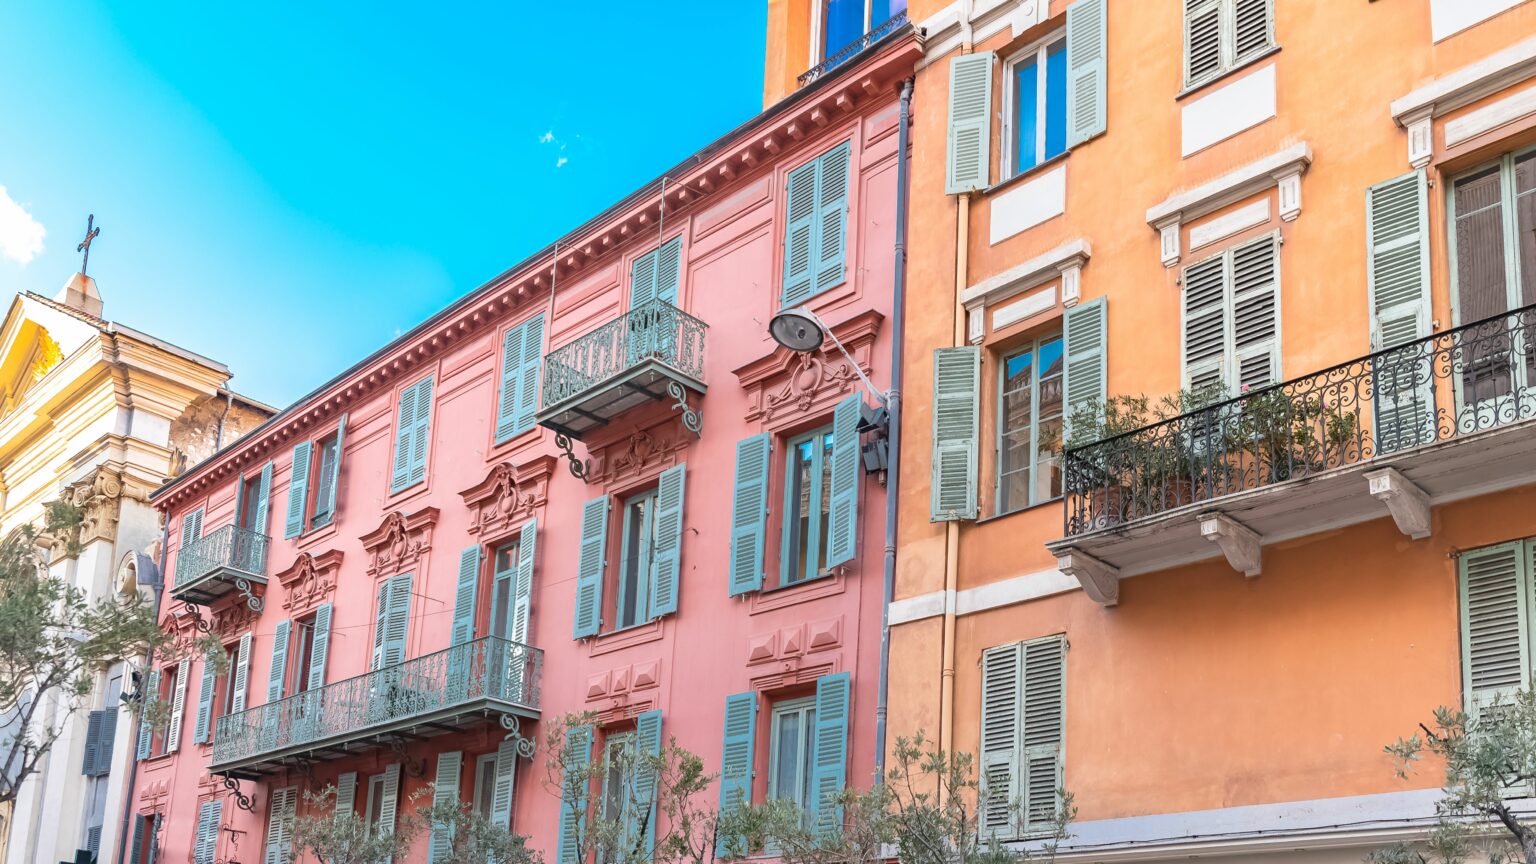 Häuserfront in Nizza